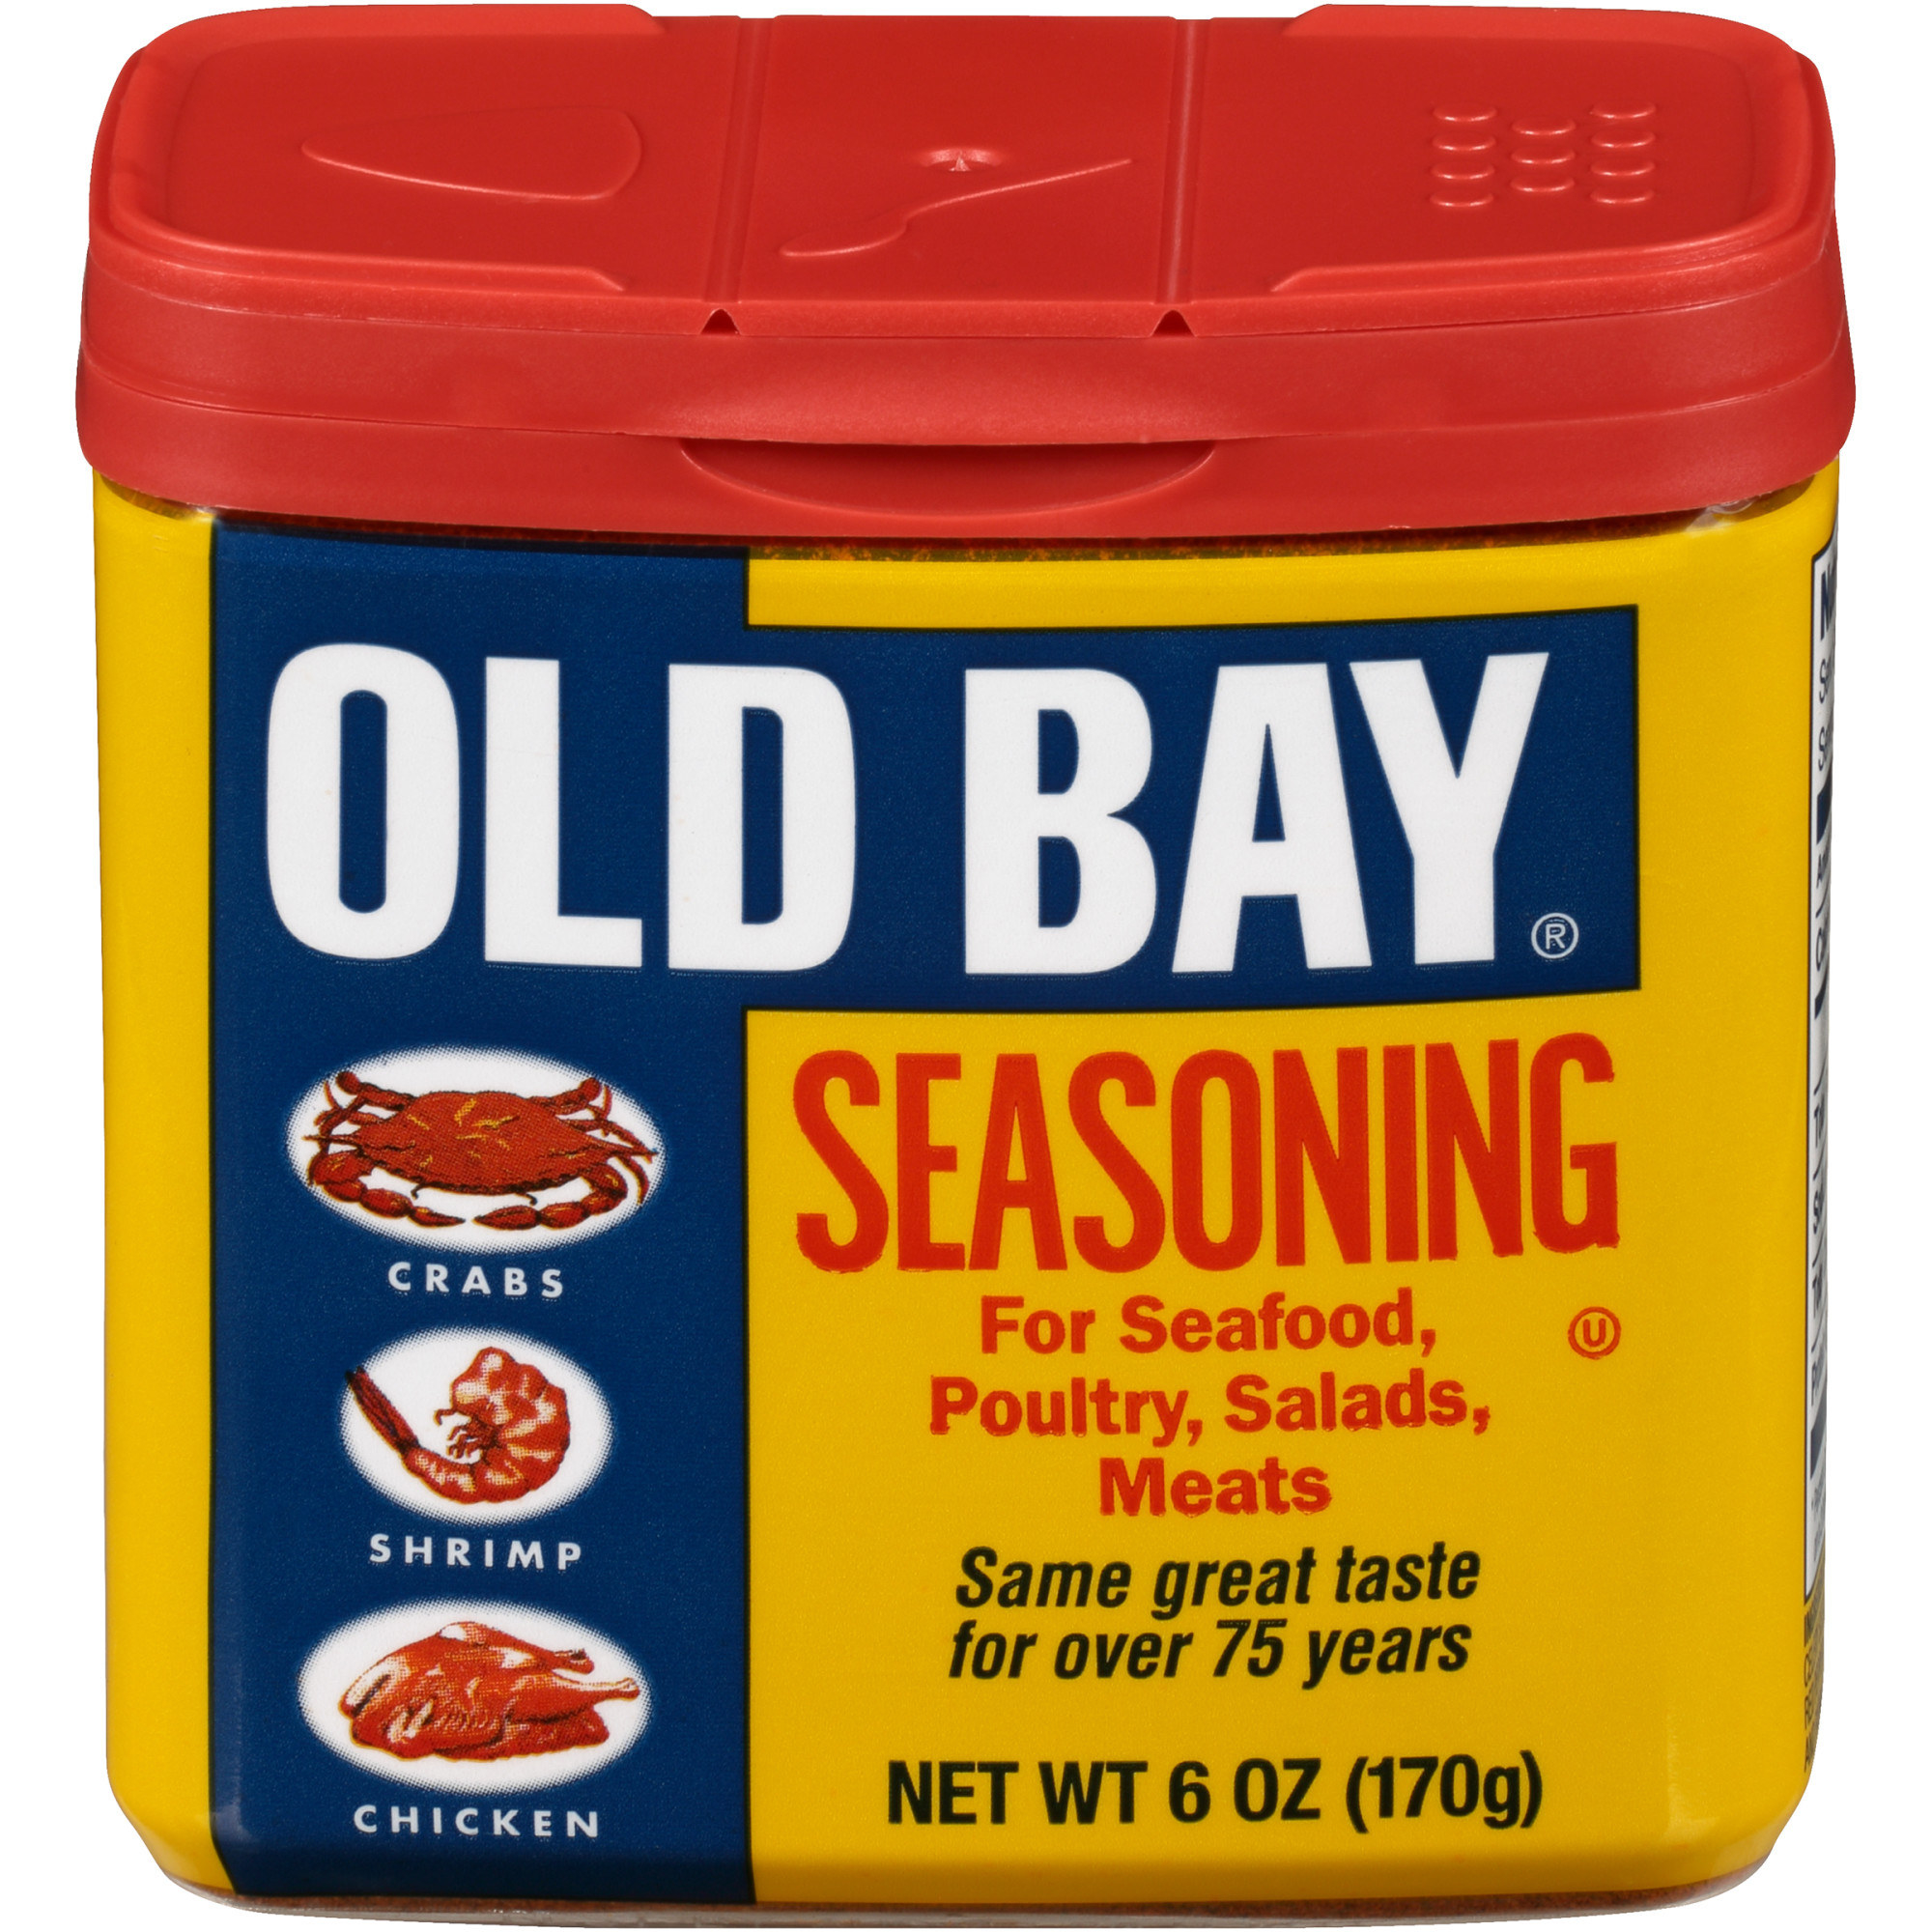 A package of Old Bay Seasoning